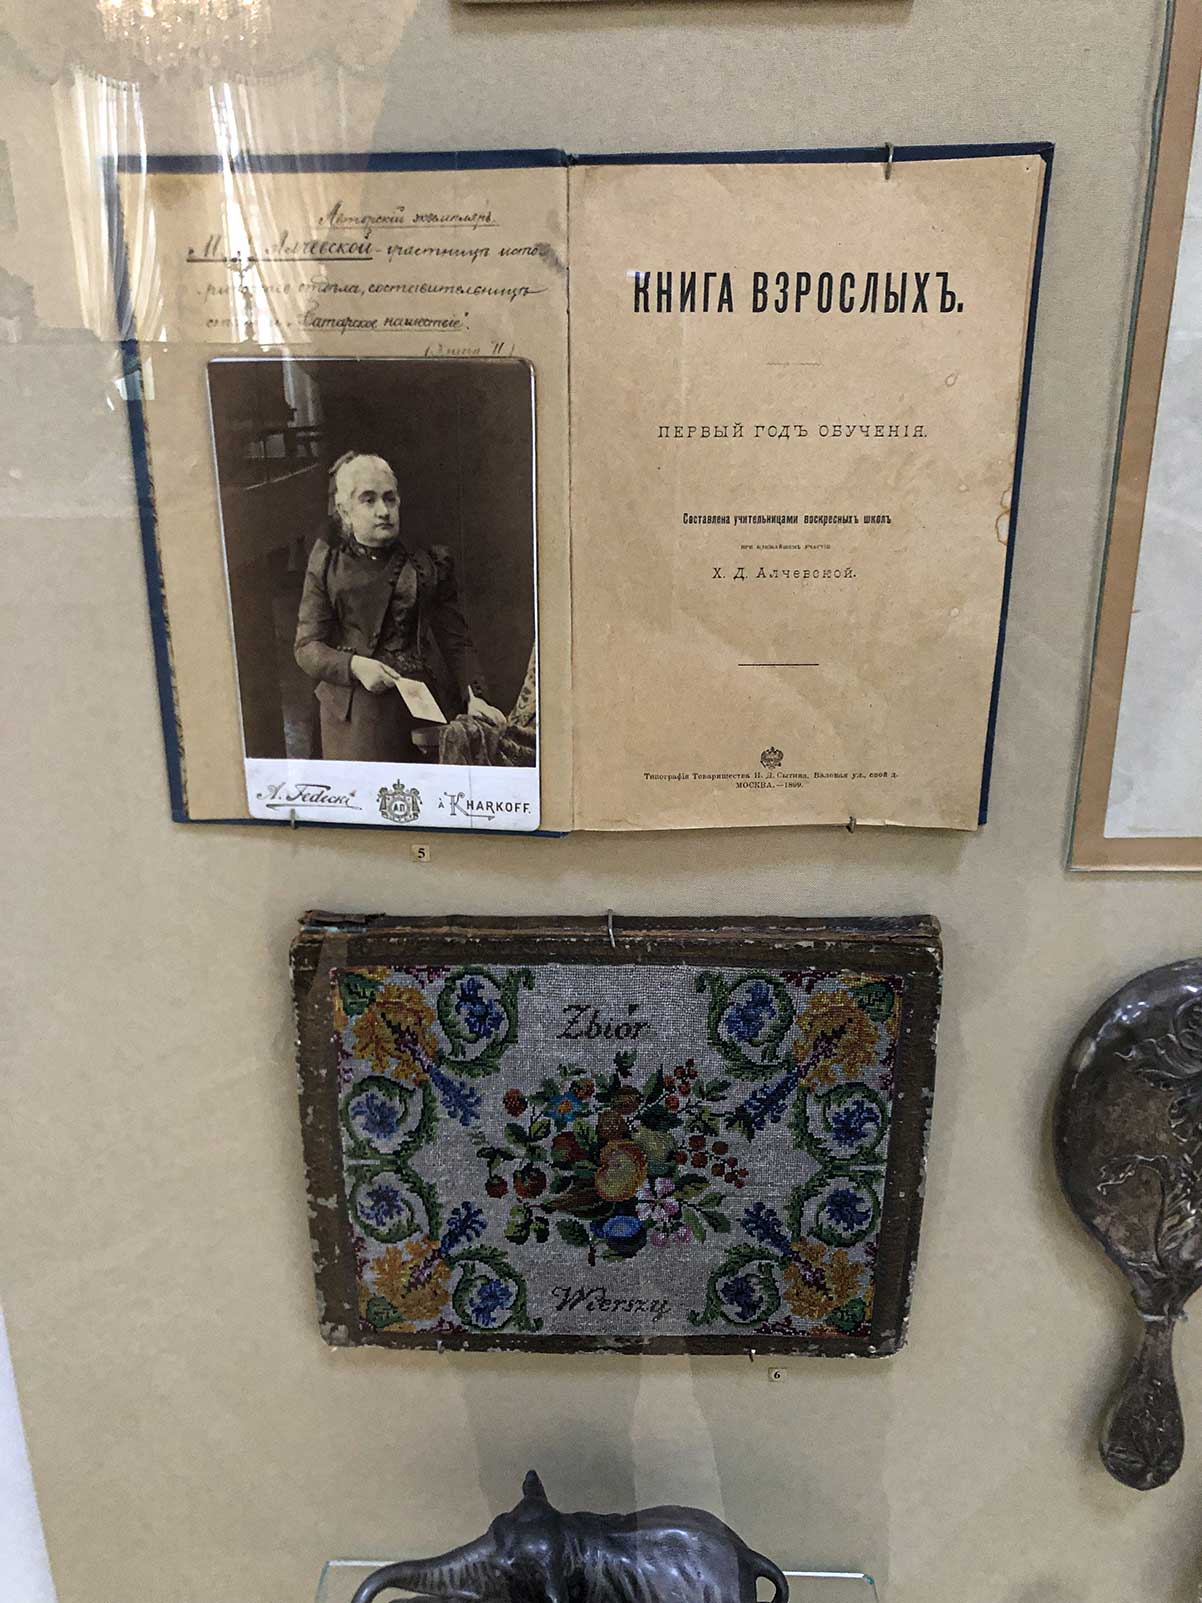 Алчевська Х.Д. (1841-1920) — відомий педагог, яка власним коштом утримувала недільні школи на Слобожанщині